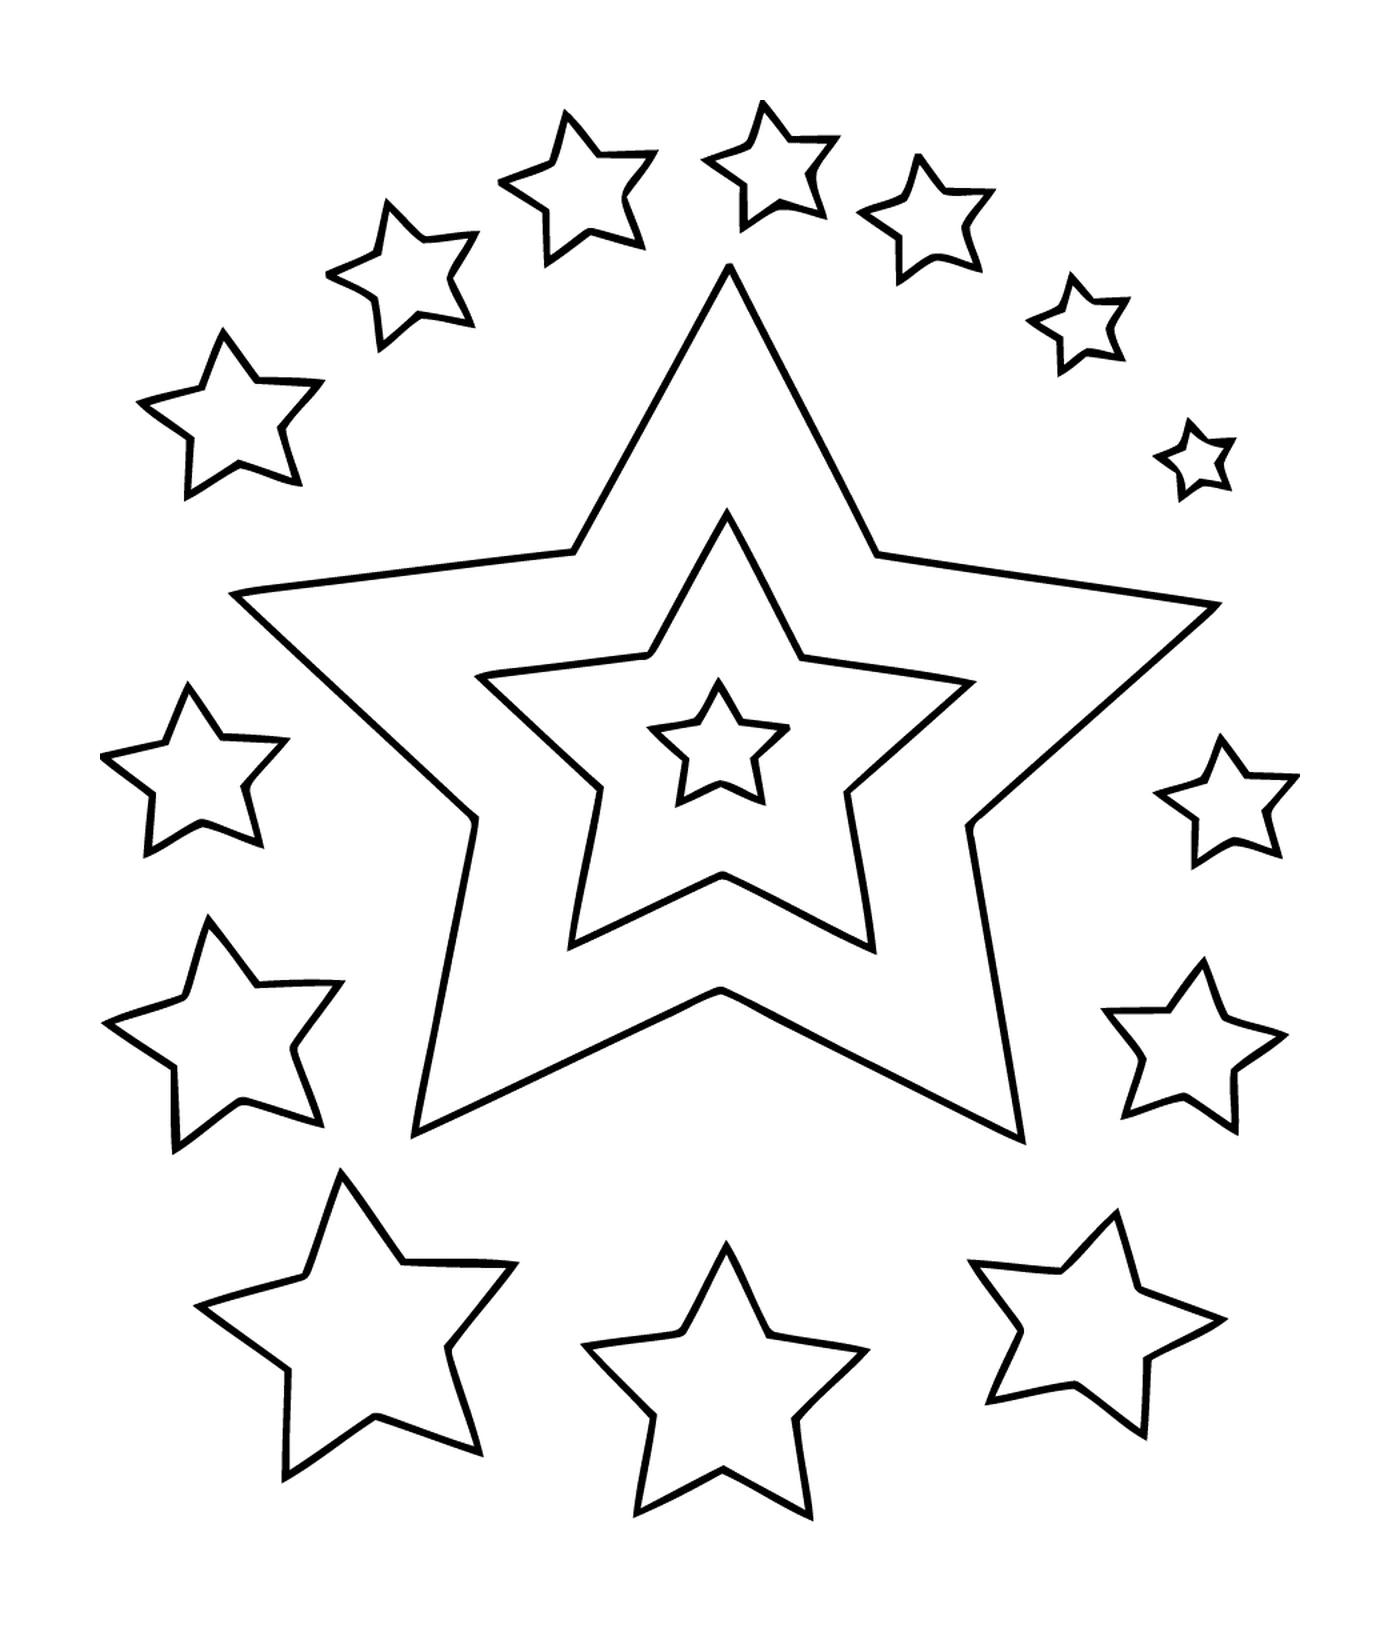   Un ensemble d'étoiles éblouissantes 